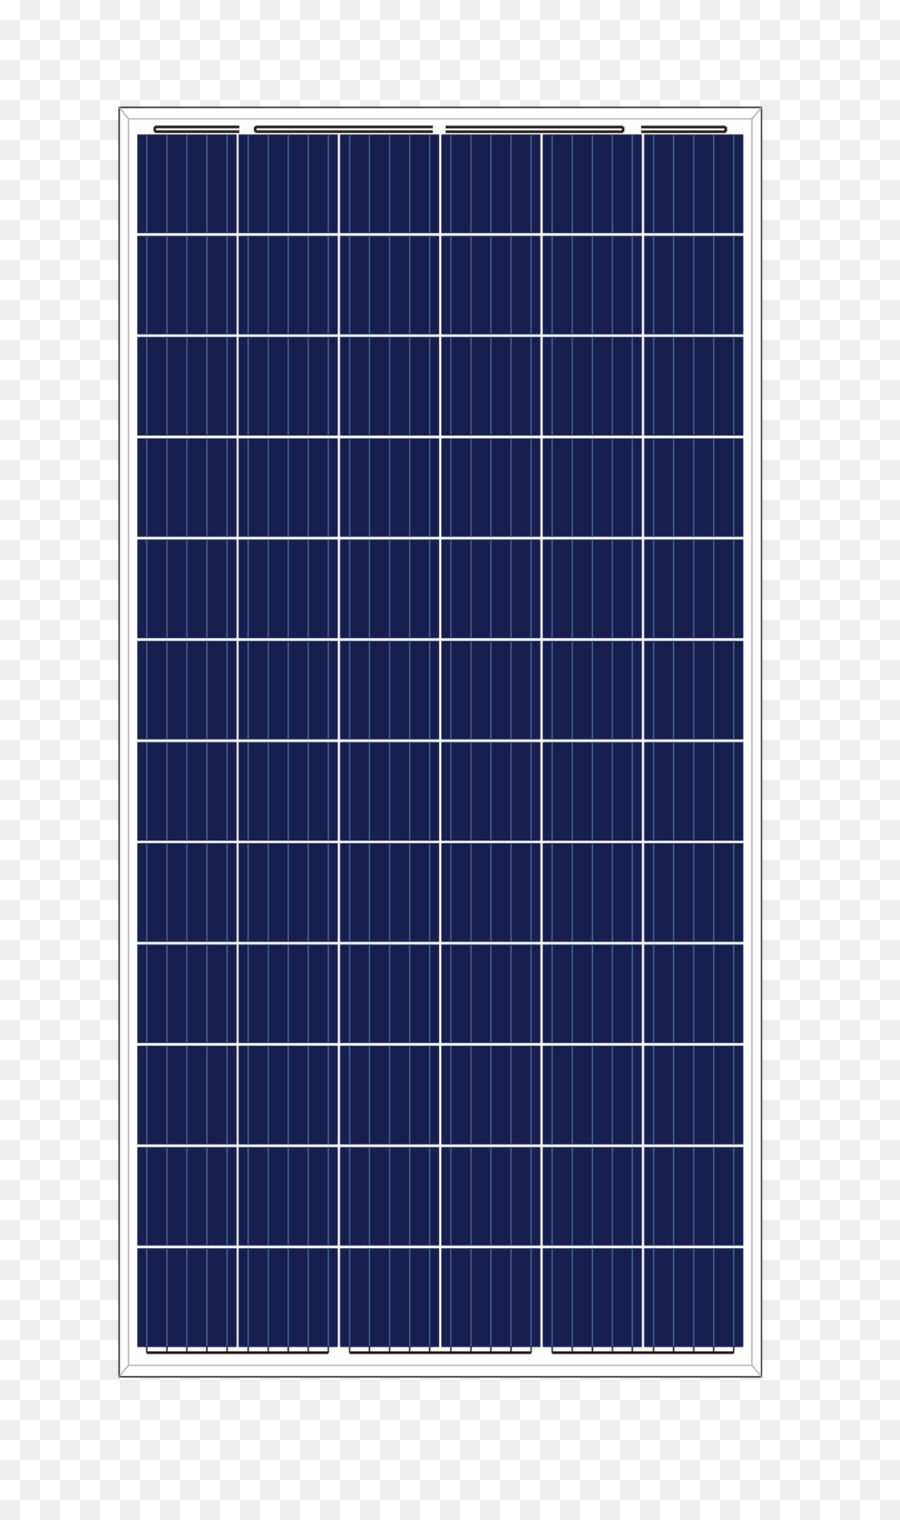 Sonnenkollektoren Energie Solarenergie Sky plc - Blendung Effizienz